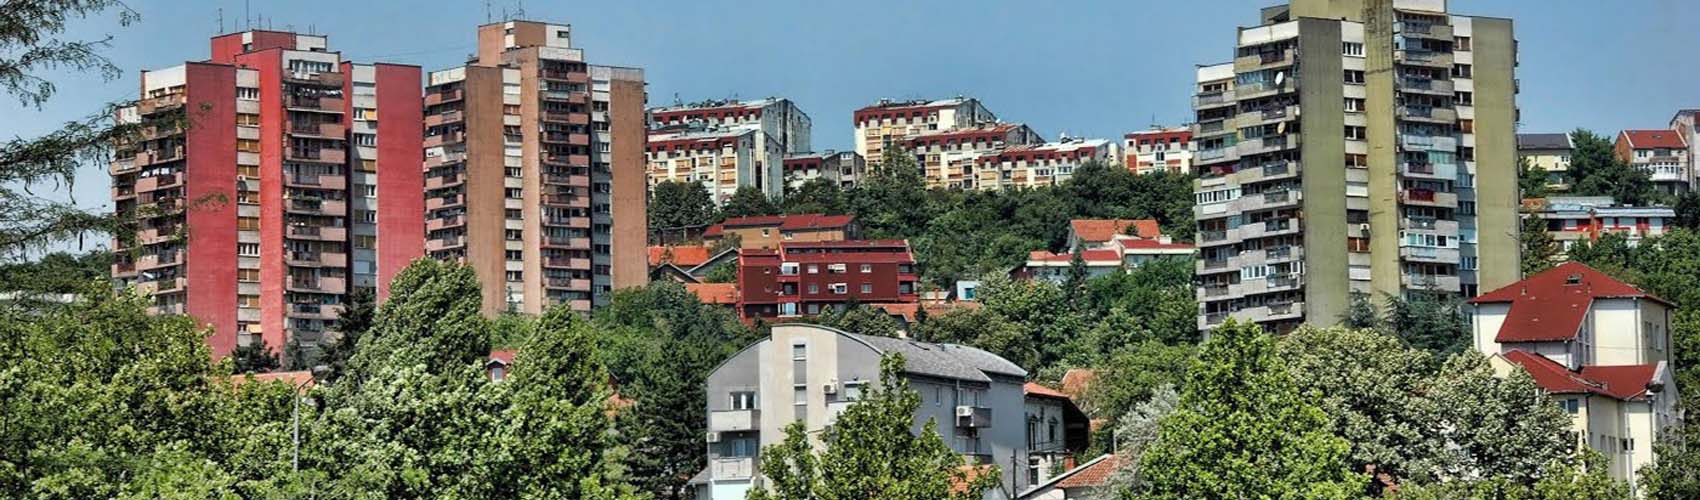 Kasko osiguranje Beograd | Rakovica